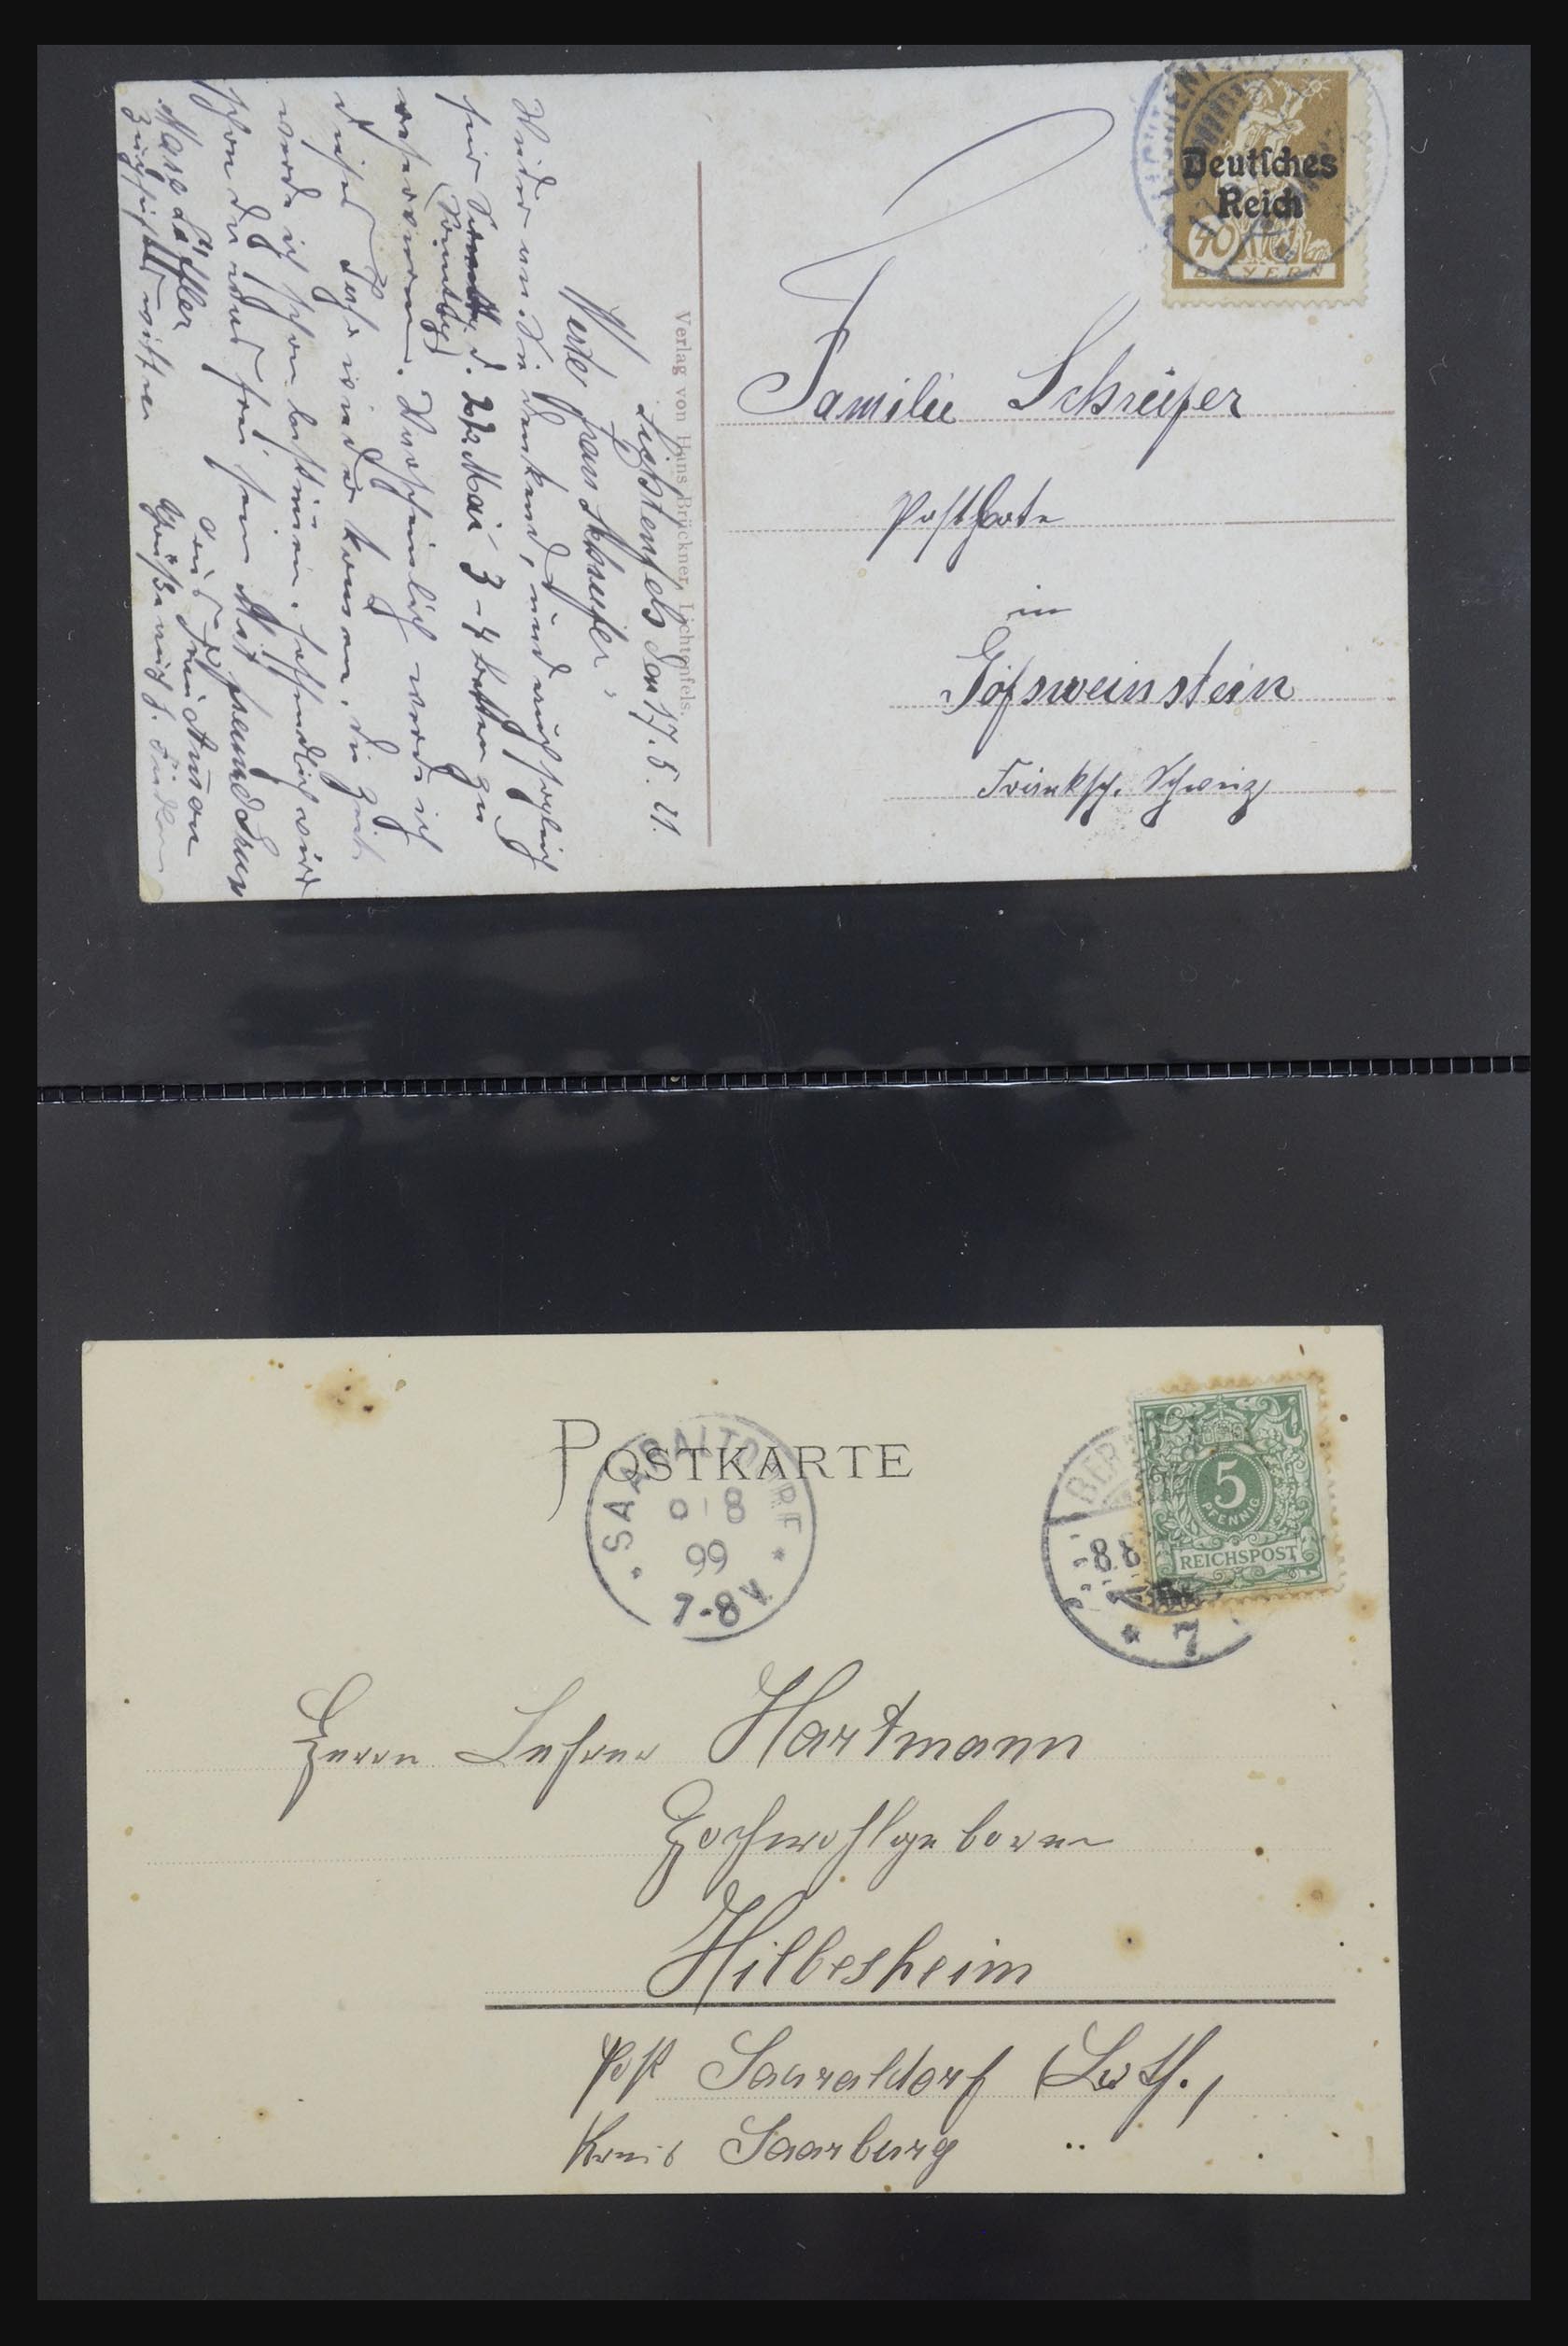 31952 402 - 31952 German Reich cards.